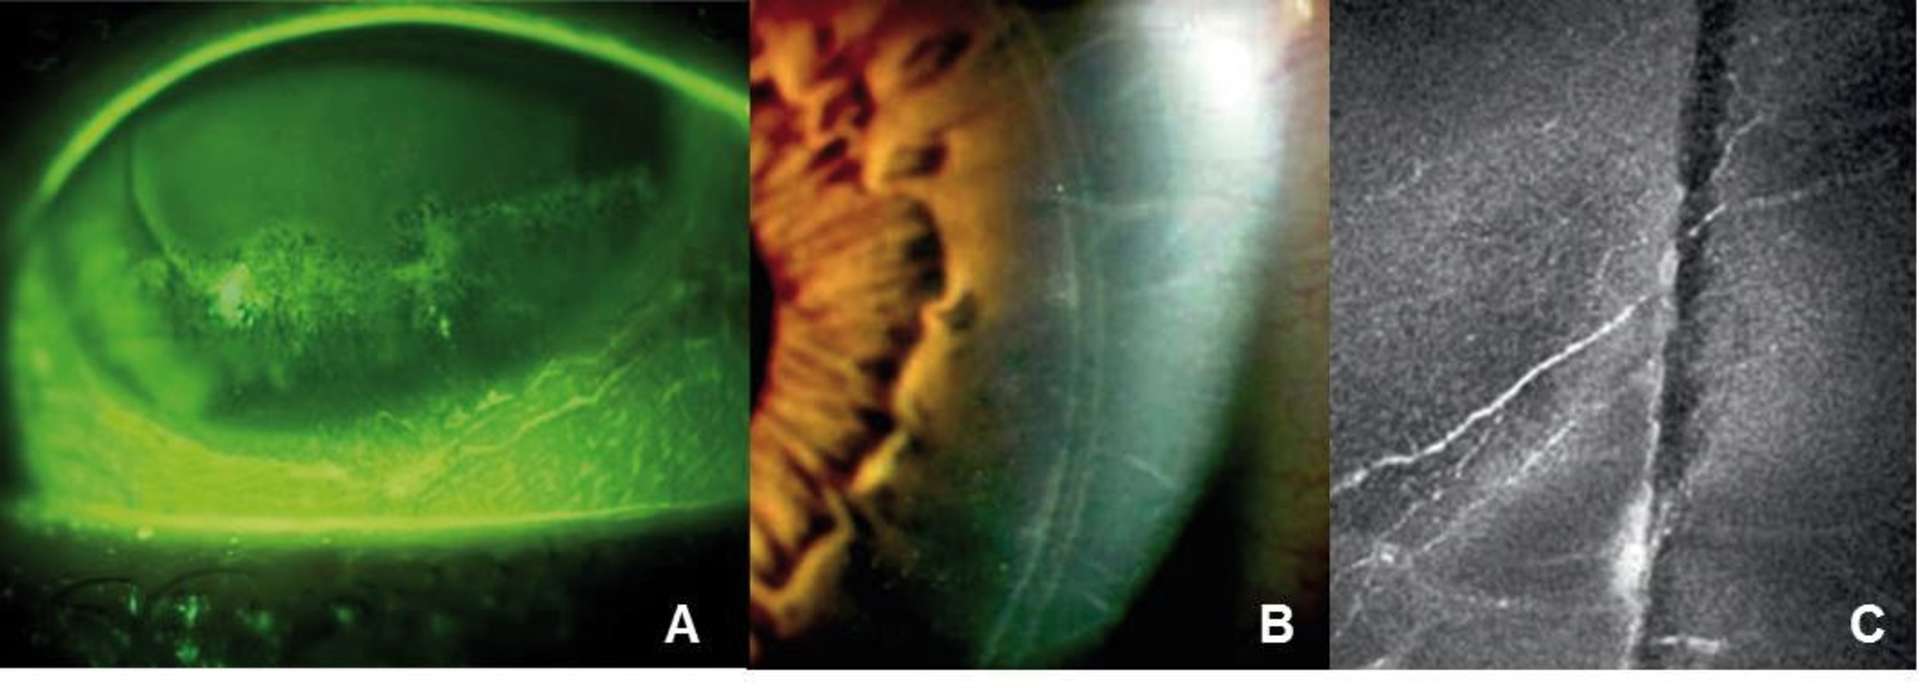 Figure 3. Sécheresse oculaire sévère après une chirurgie réfractive par procédure LASIK, kératite ponctuée sévère bien visualisée après ­l’instillation de fluorescéine (A) ; les rebords du capot sont bien ­visibles à l’examen biomicroscopique (B), mais également en microscopie confocale in vivo, objectivant la ­section nerveuse et la diminution de la densité du plexus sous-basal (C).
